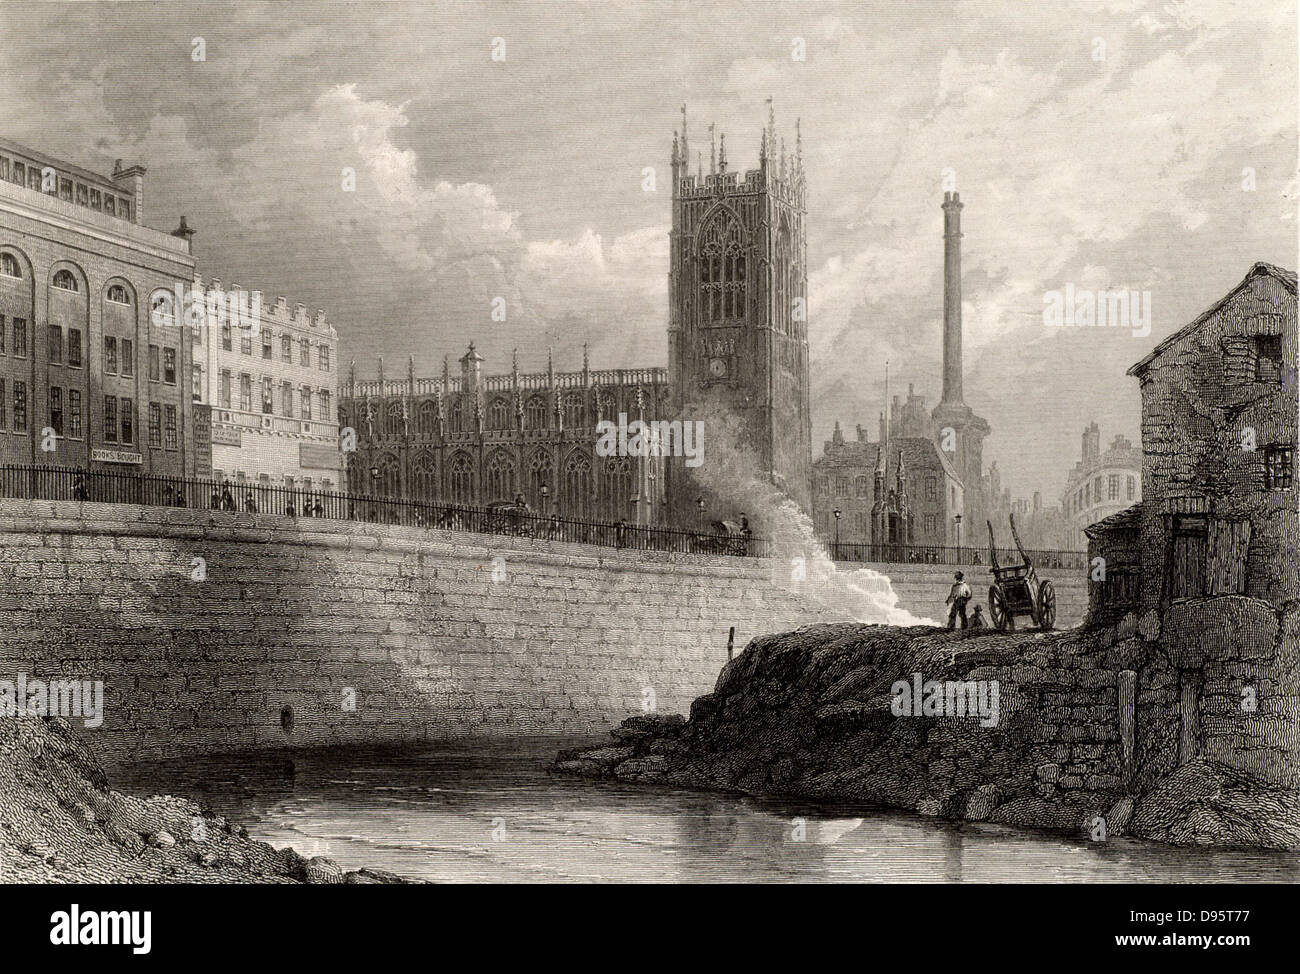 Manchester, Angleterre, à partir de la rivière Irwell, montrant les nouveaux bâtiments, dont une imposante cheminée d'usine, d'une ville prospère, contrastant avec la petite, vieille, effondrement des bâtiments industriels sur la droite. Manchester a été le centre de l'industrie du coton britannique et est l'une des premières villes d'Angleterre à être industrialisée. La gravure, milieu du xixe siècle. Banque D'Images